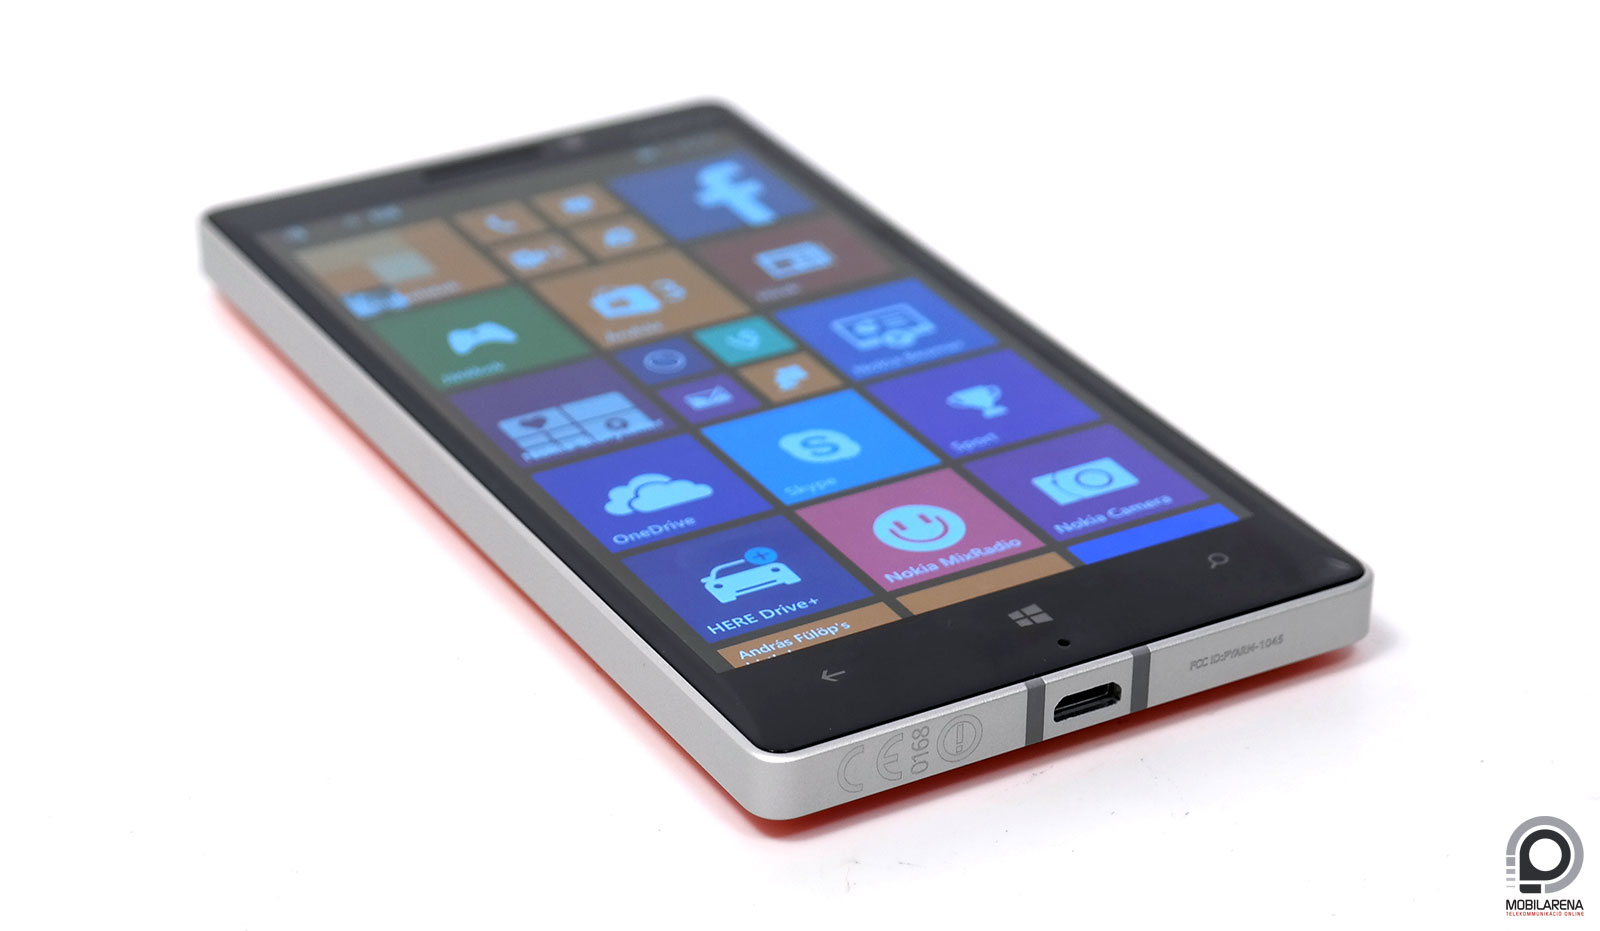 Nokia Lumia 930 - ablak, fém tokozásban - Mobilarena Okostelefon teszt -  Nyomtatóbarát verzió